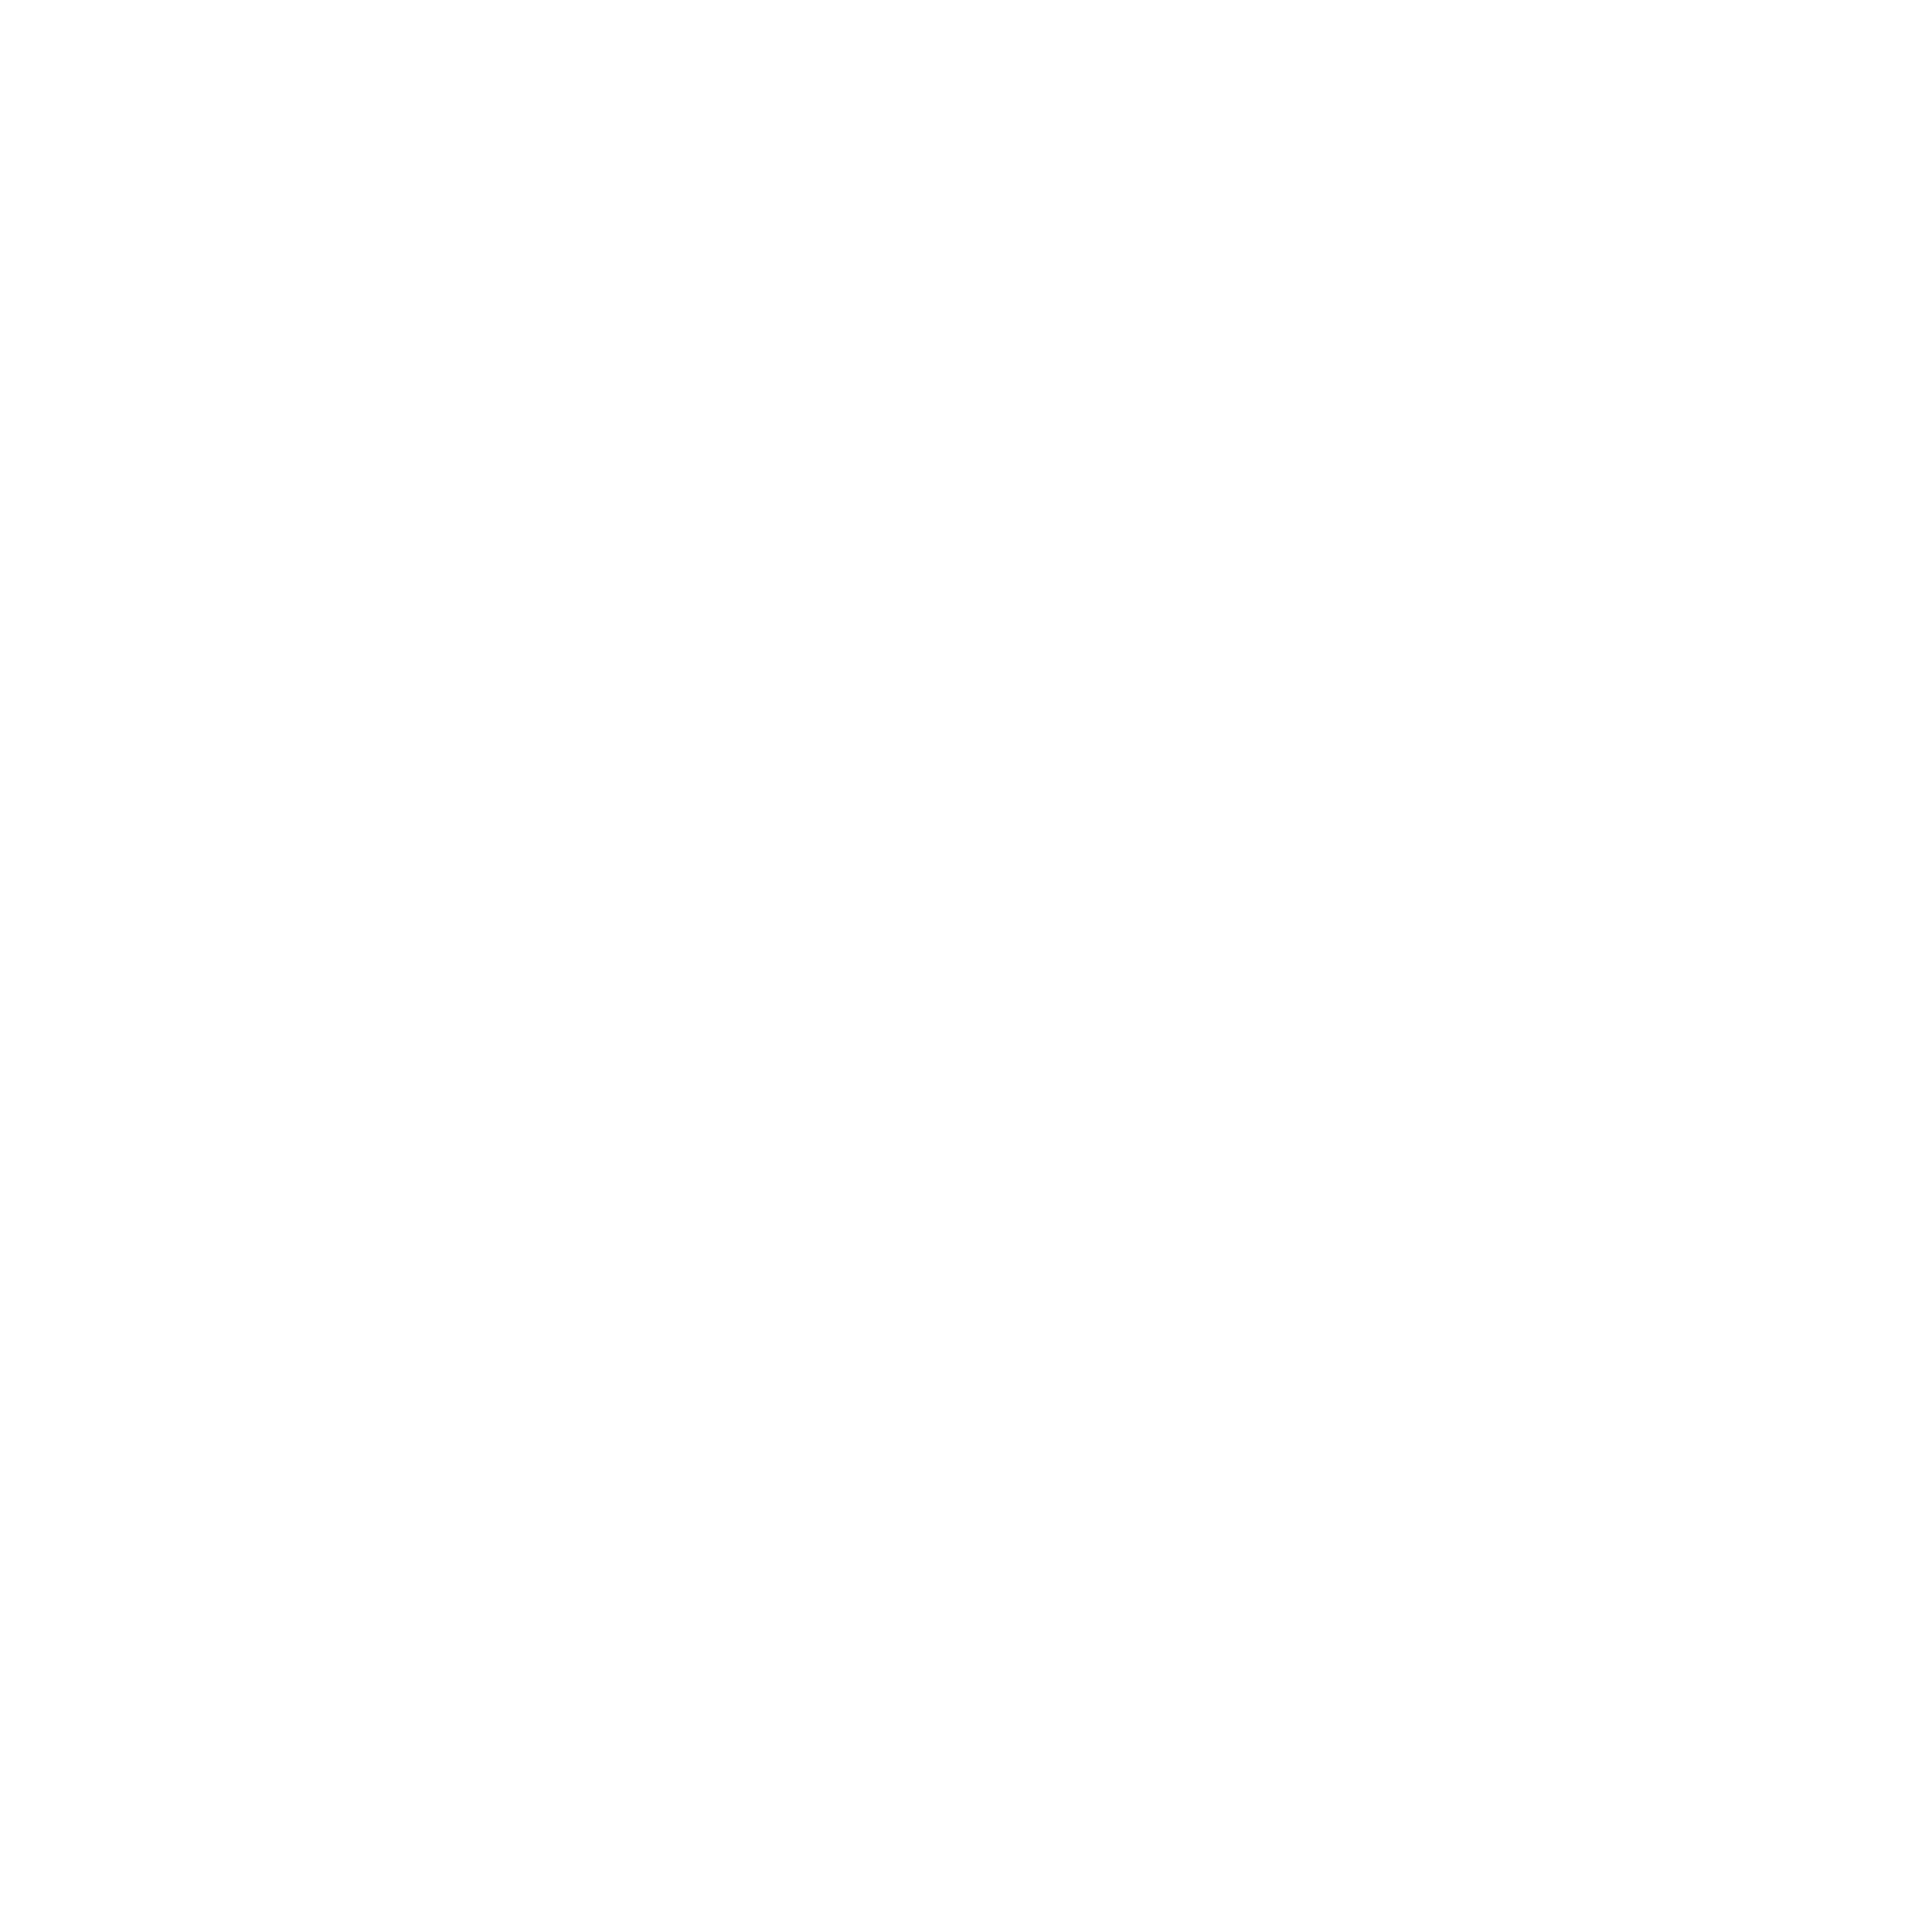 We are PhabletGuru